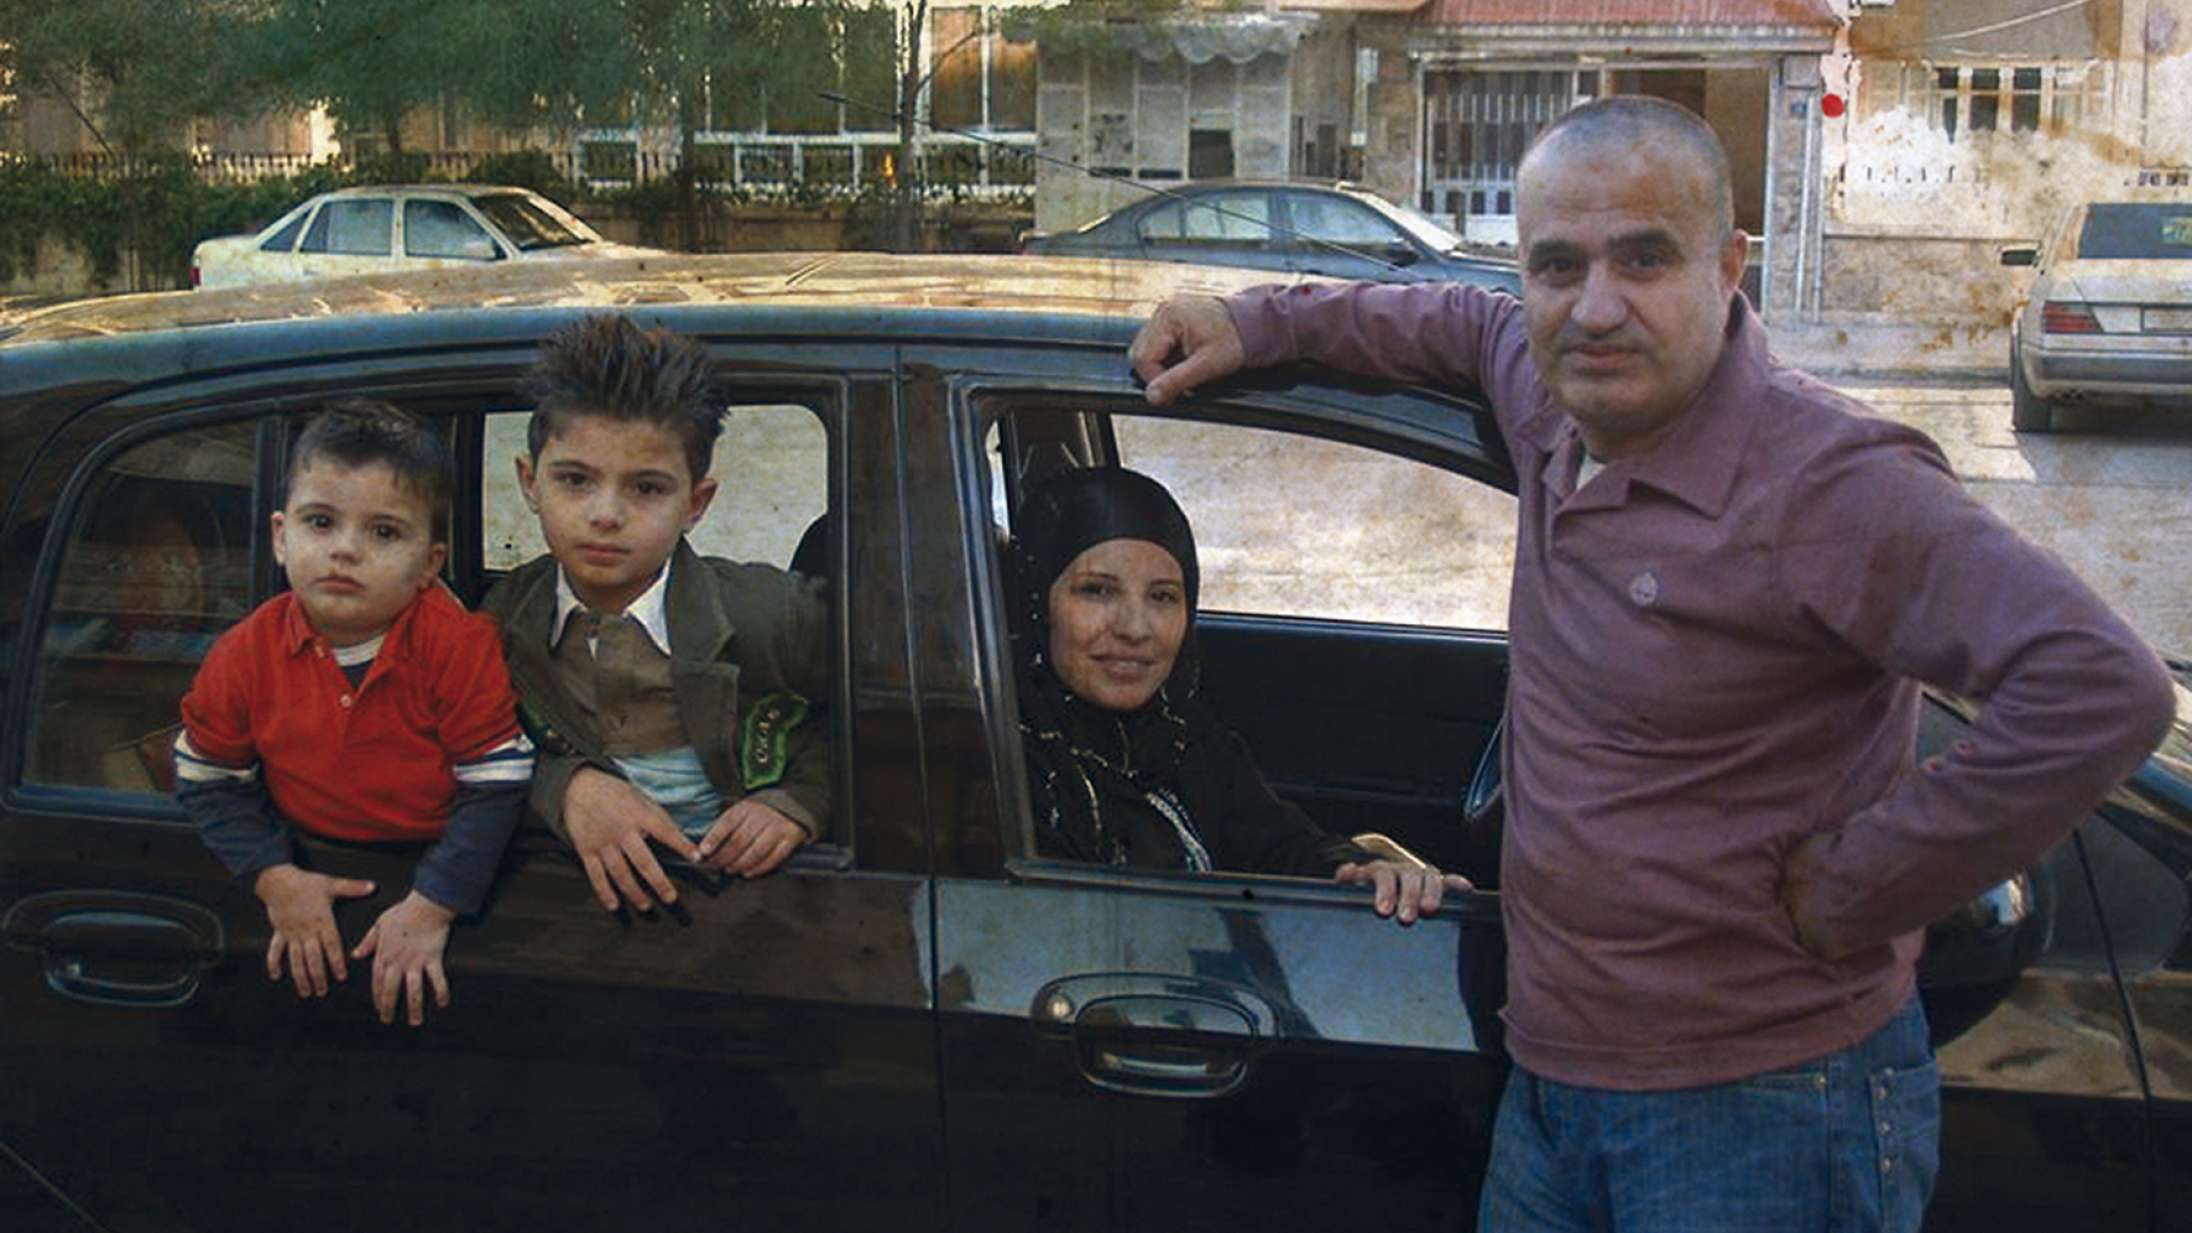 ’En splittet familie’: Hjerter knuses for åben skærm i empatisk flygtningedrama